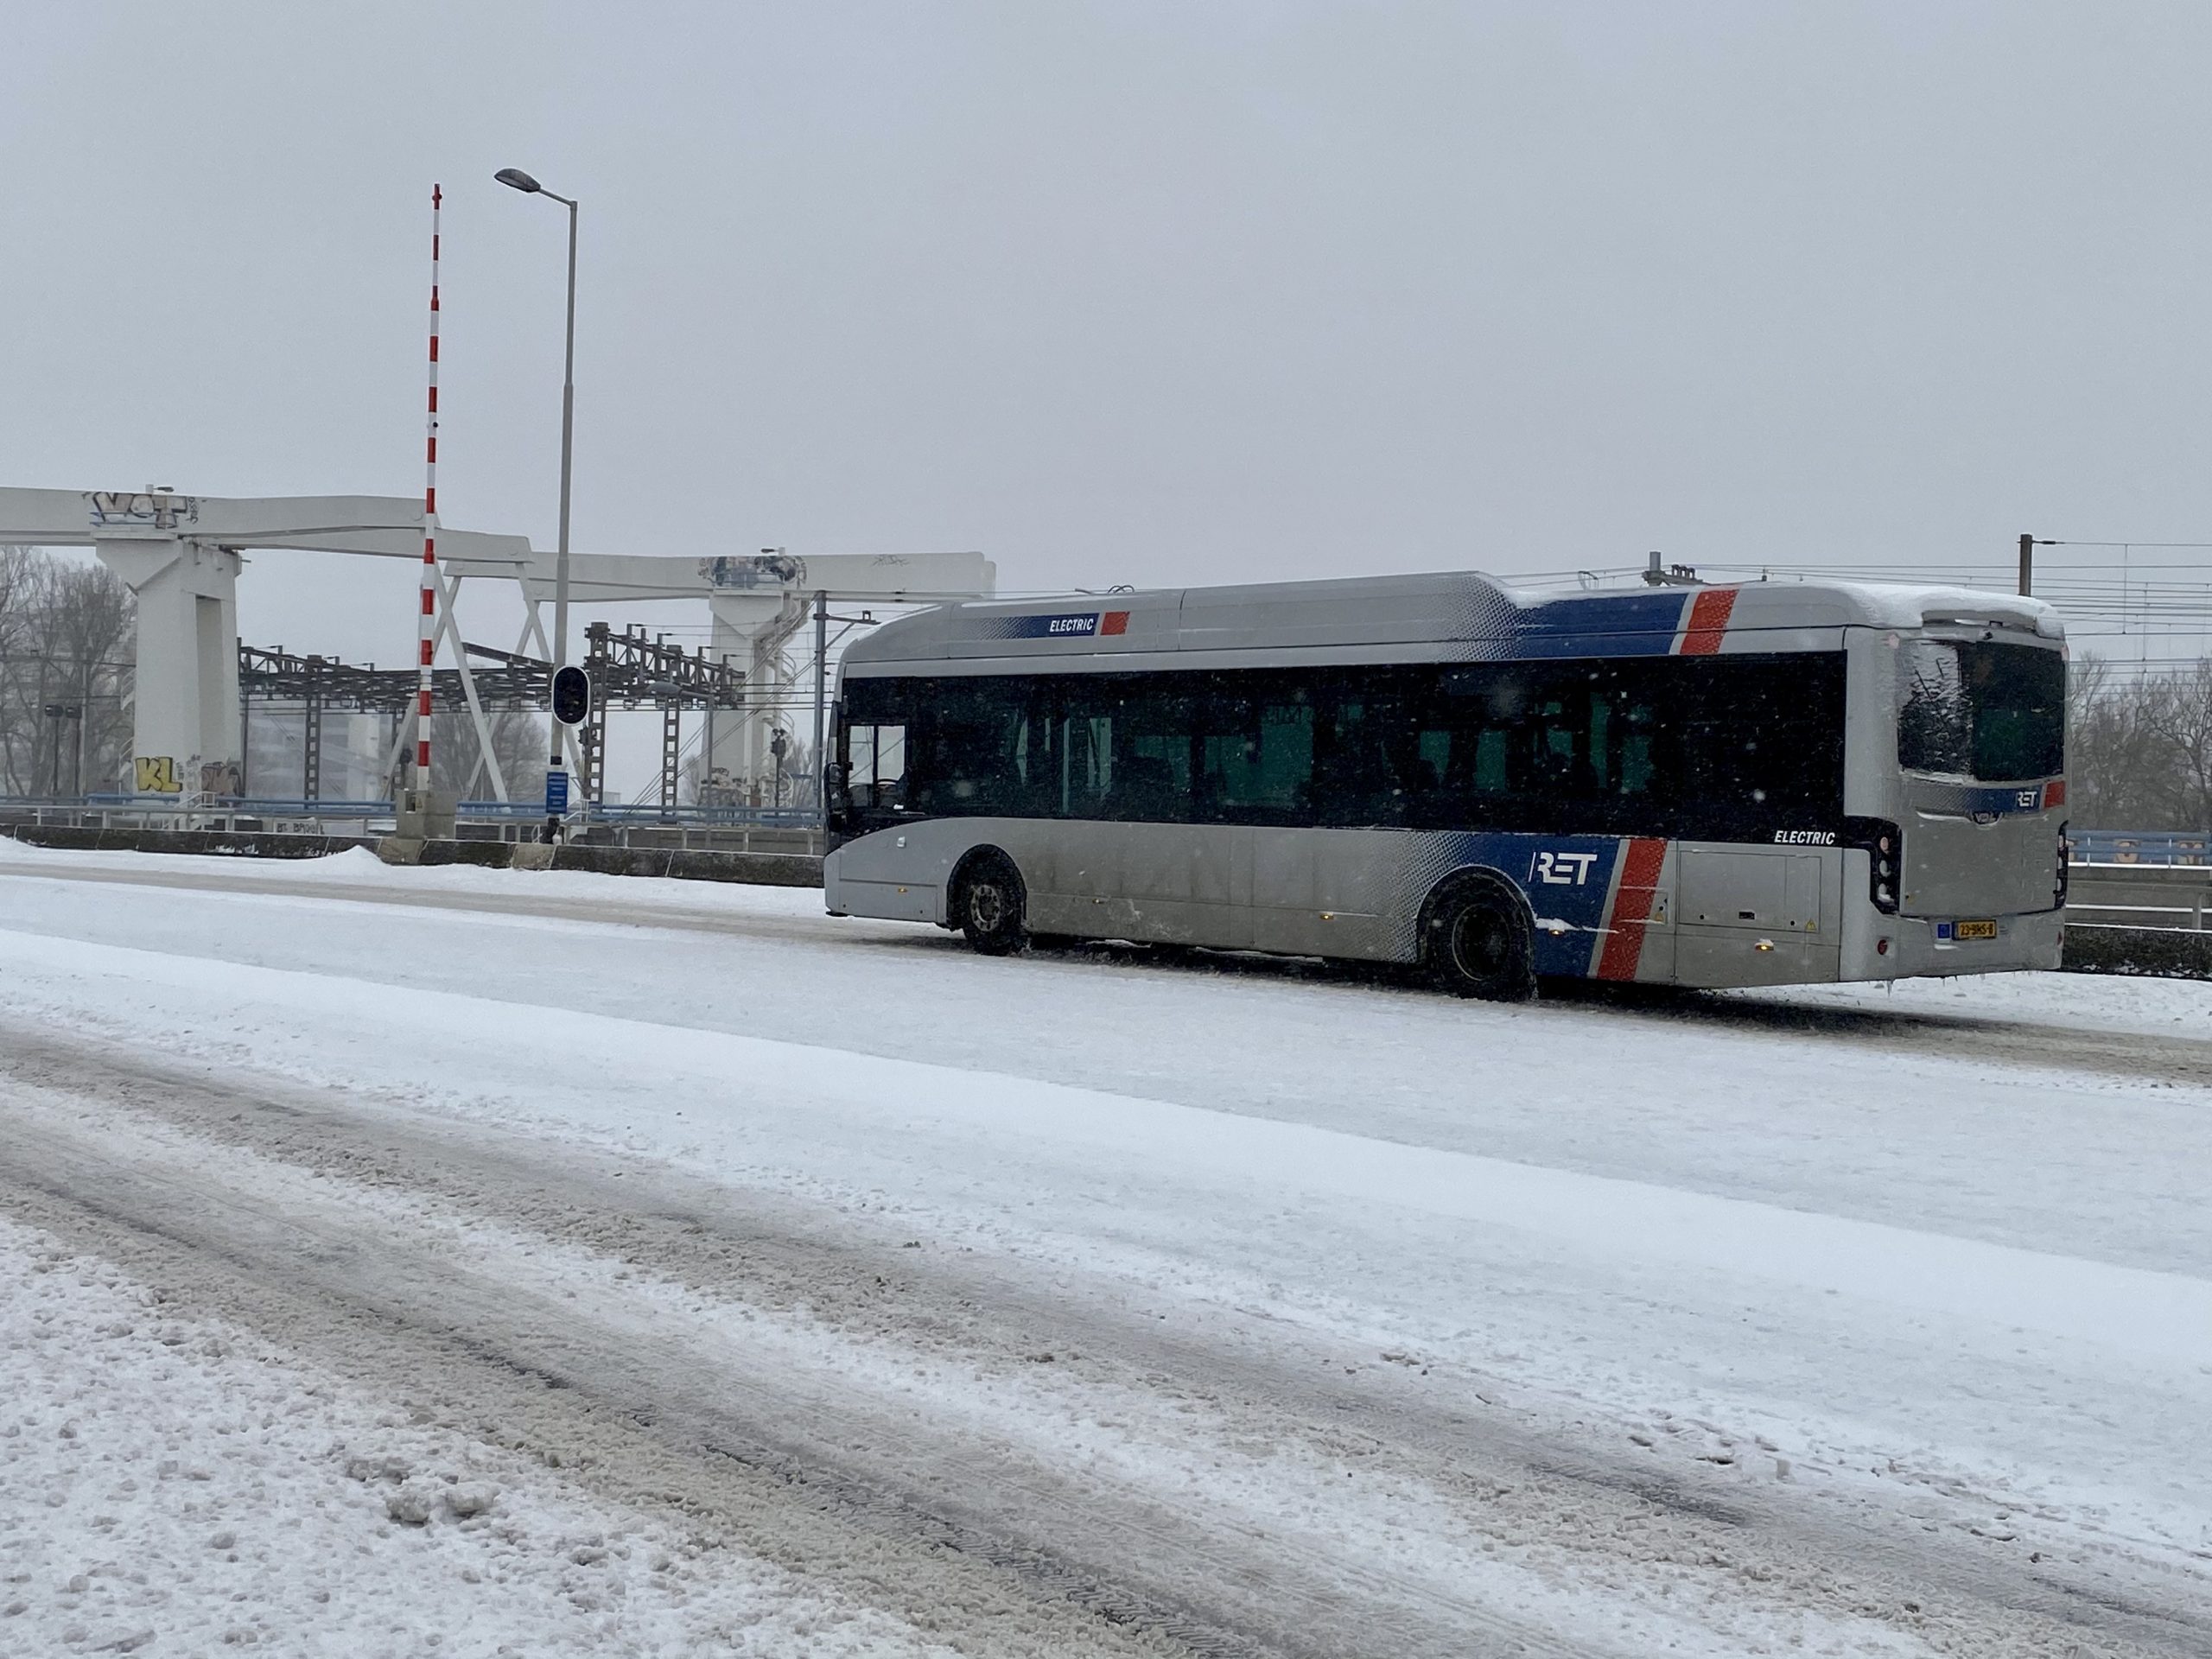 Bus RET in de sneeuw